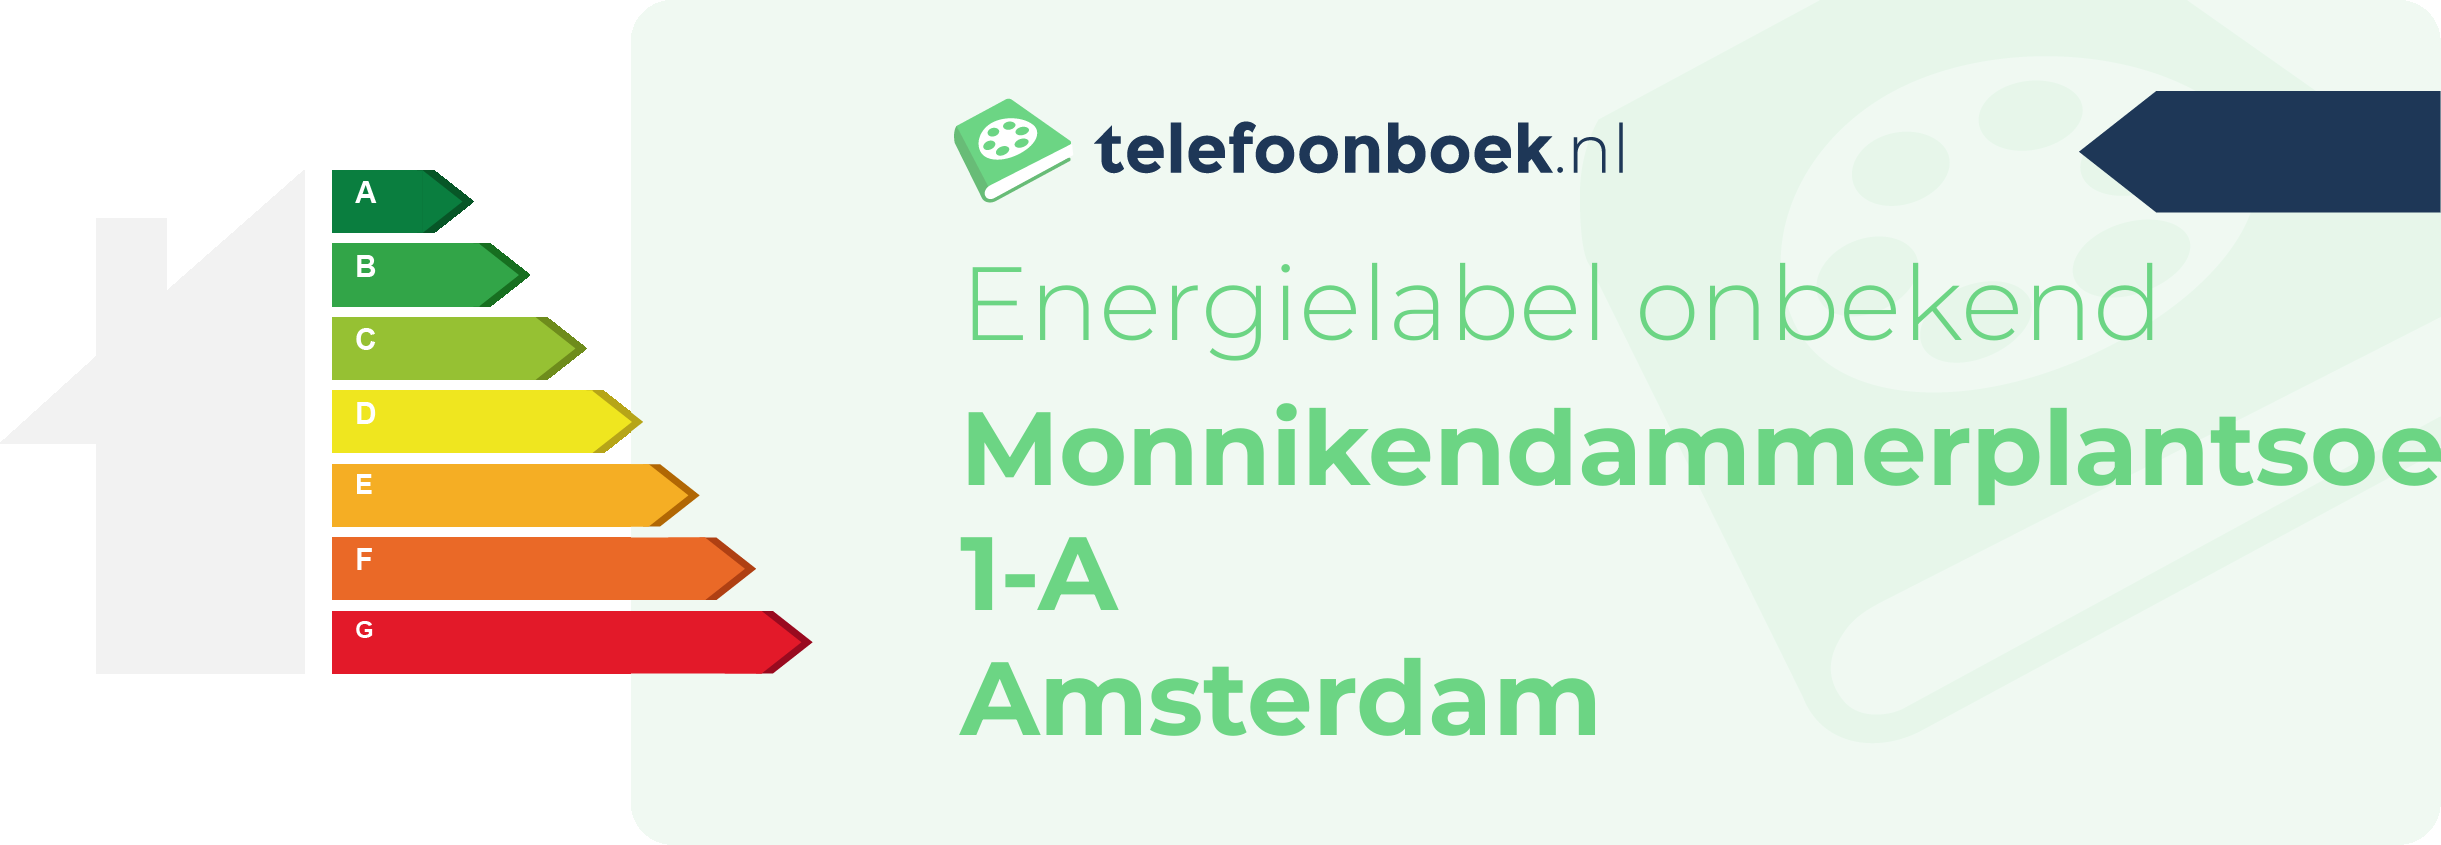 Energielabel Monnikendammerplantsoen 1-A Amsterdam